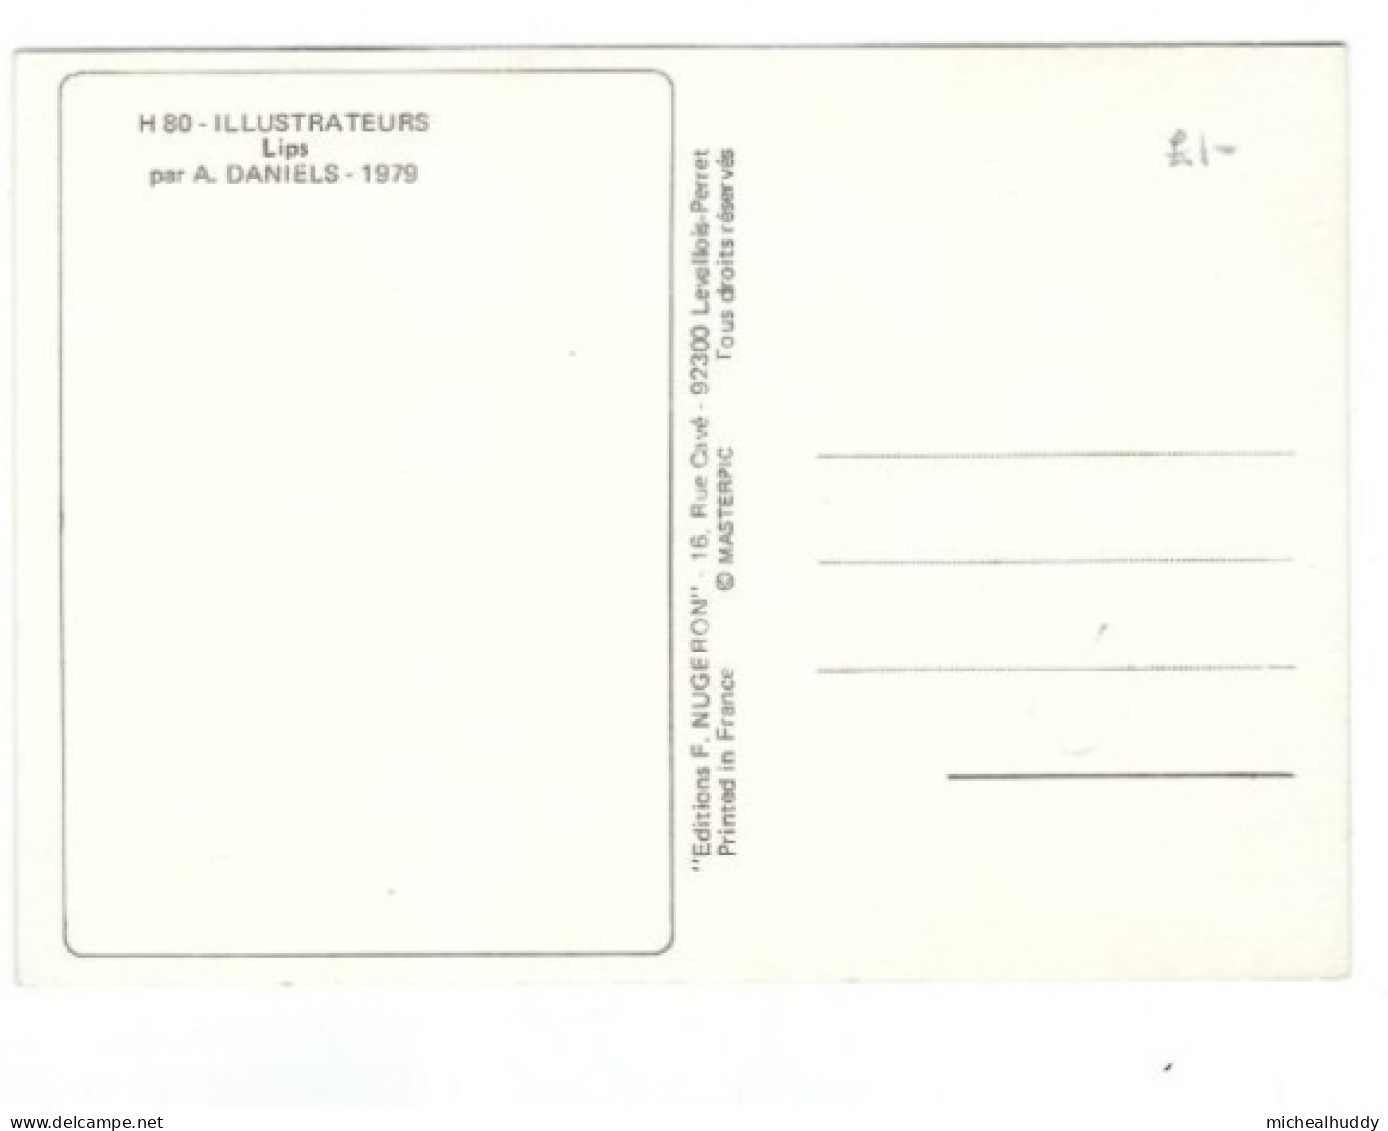 PUBL BY EDITIONS NUGERON  ILLUSTRATEURS SERIES  LIPS BY A DANIELS  CARD NO H 80 - Contemporain (à Partir De 1950)